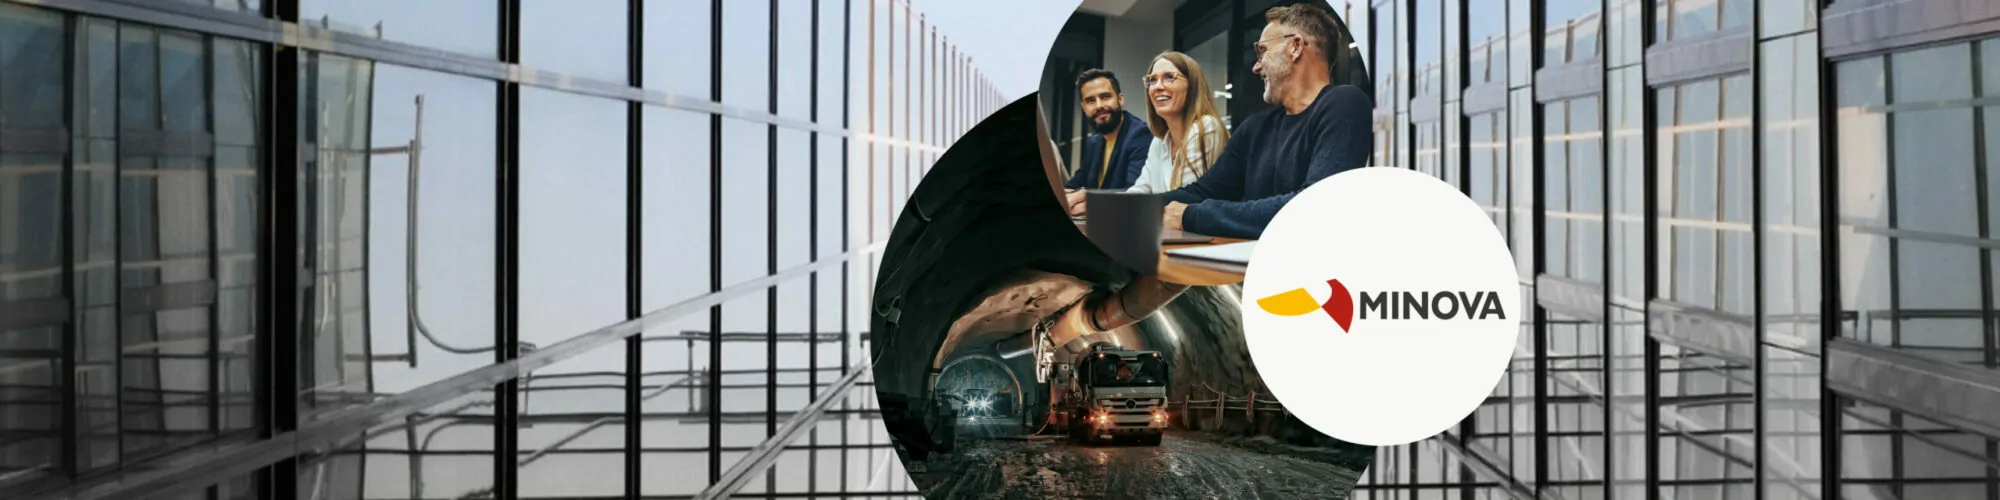 Bild von drei Personen im Gespräch, daneben das Minova Logo und ein Kraftfahrzeug in einem Bergtunnel